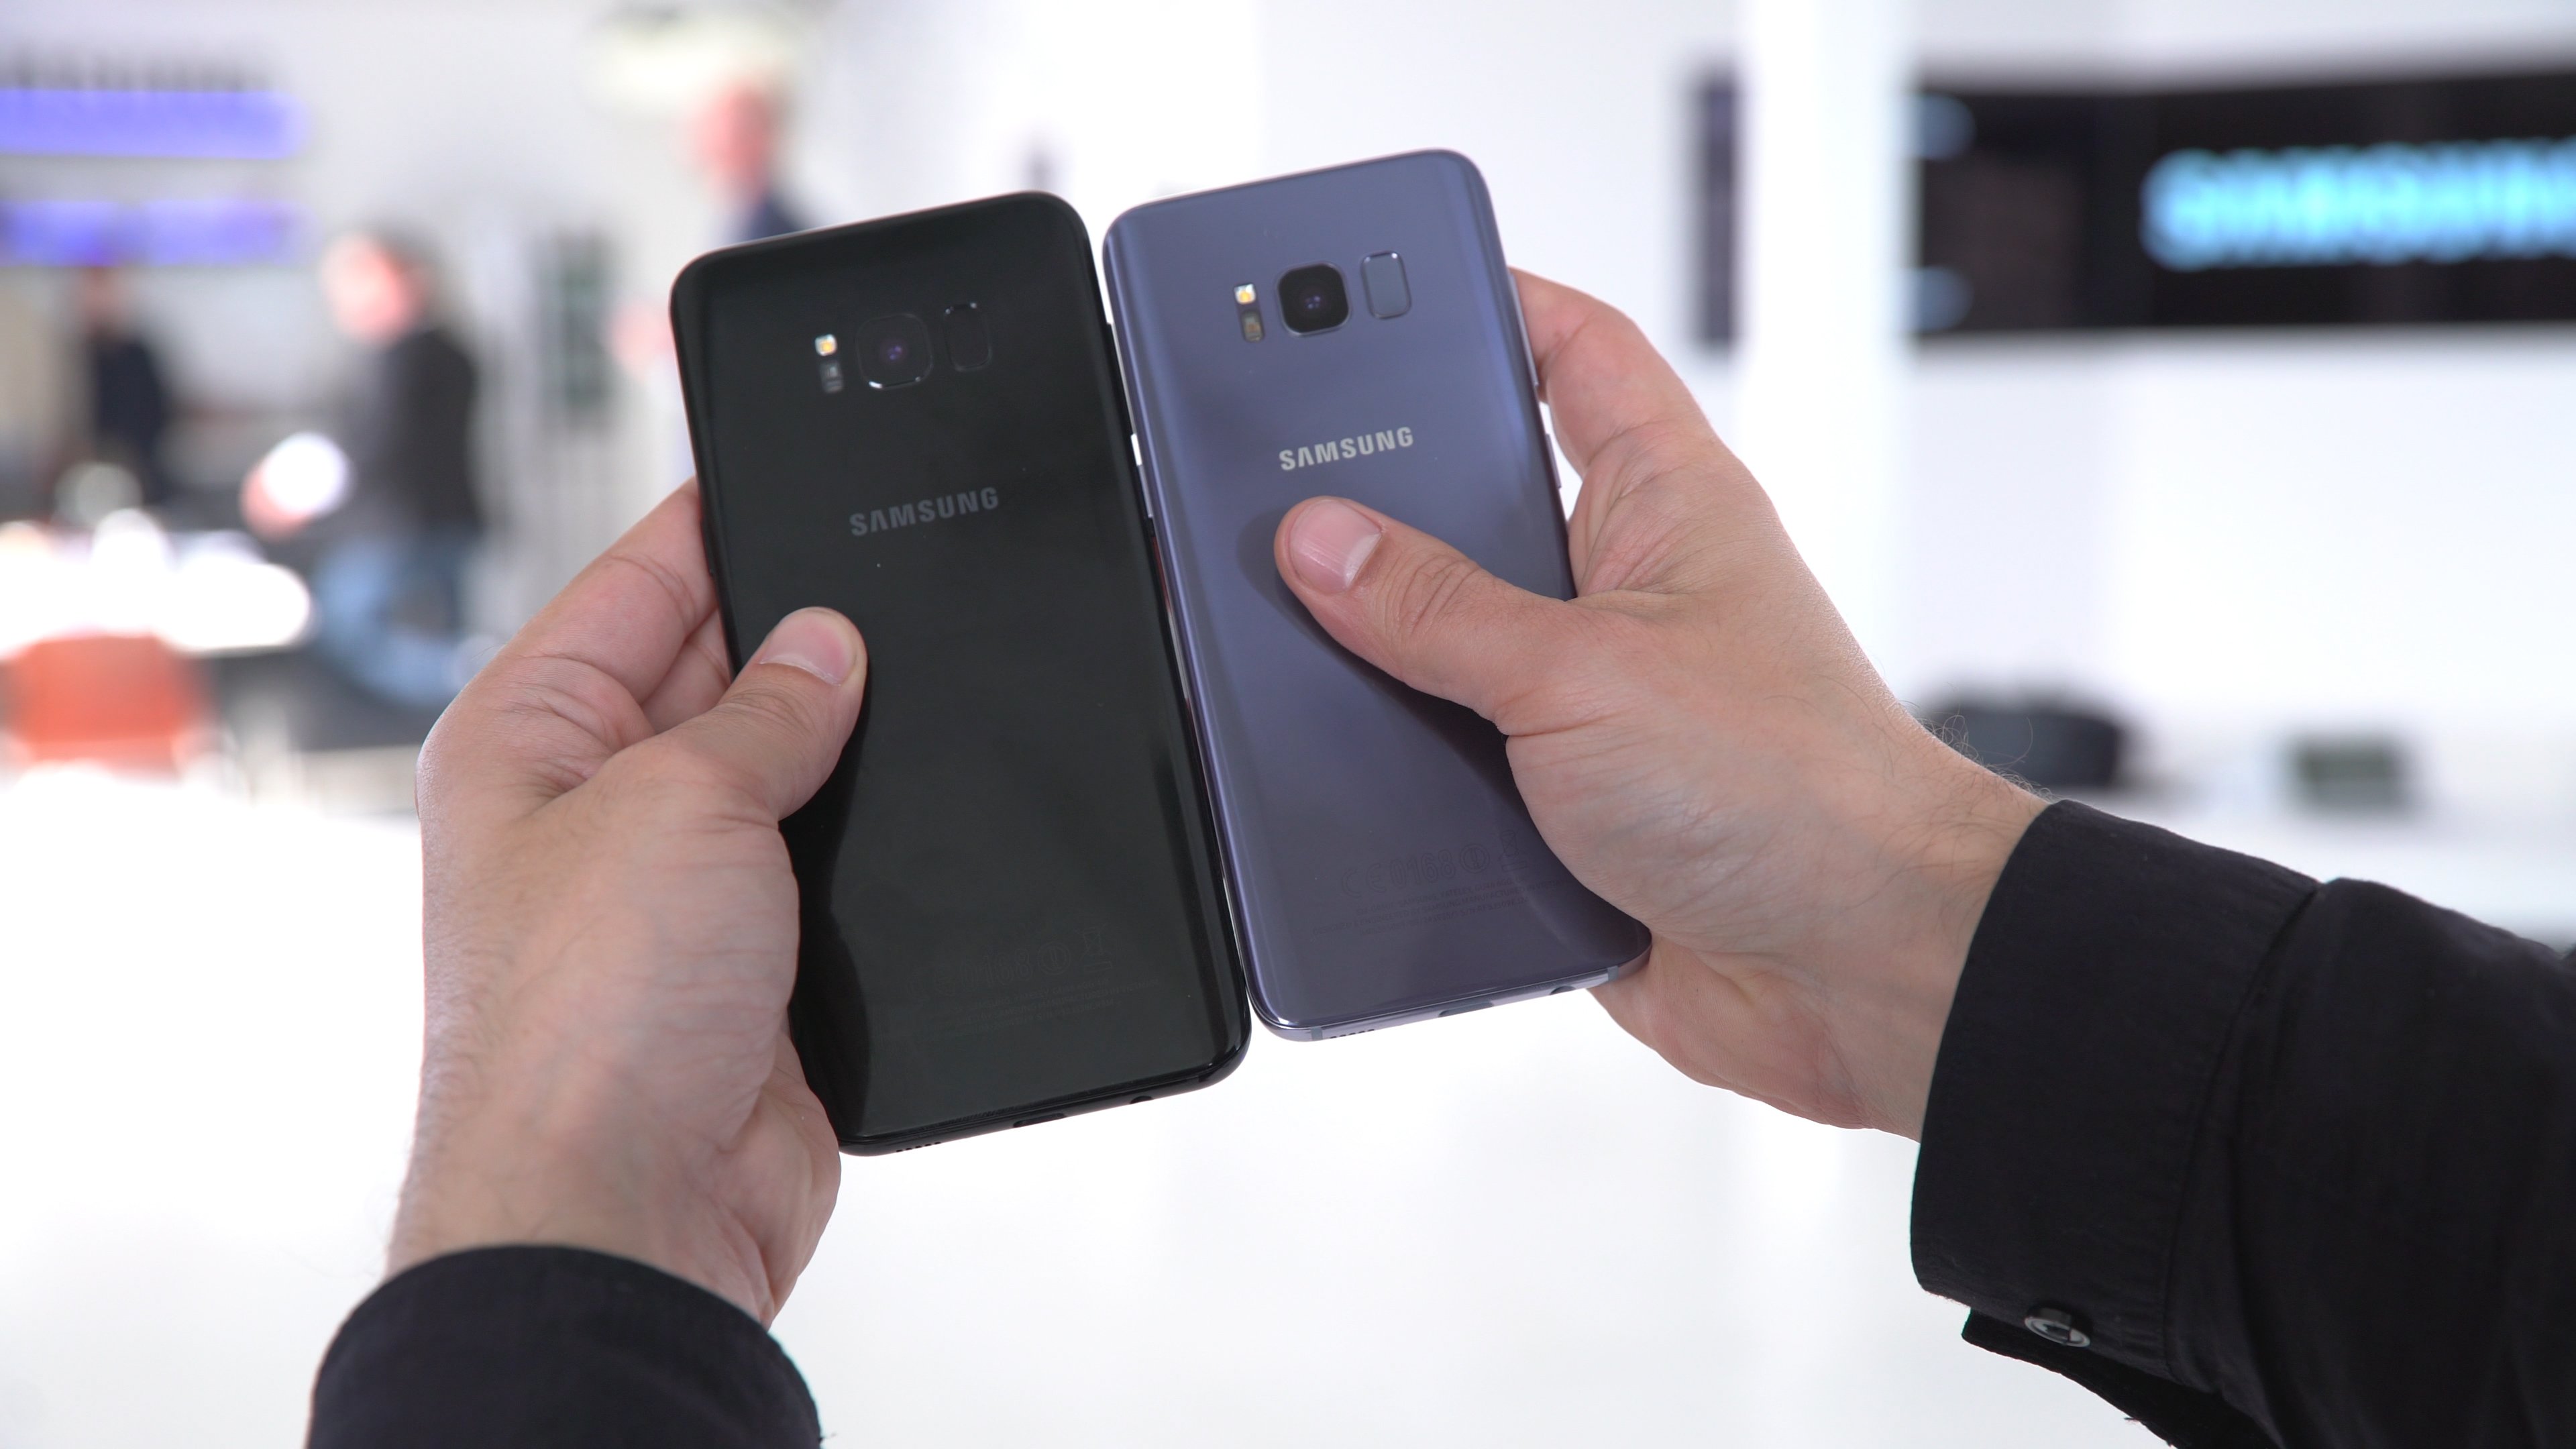 Samsung Galaxy S8 Vs Galaxy S8 Plus Im Vergleich Unterschiede Und Gemeinsamkeiten Giga